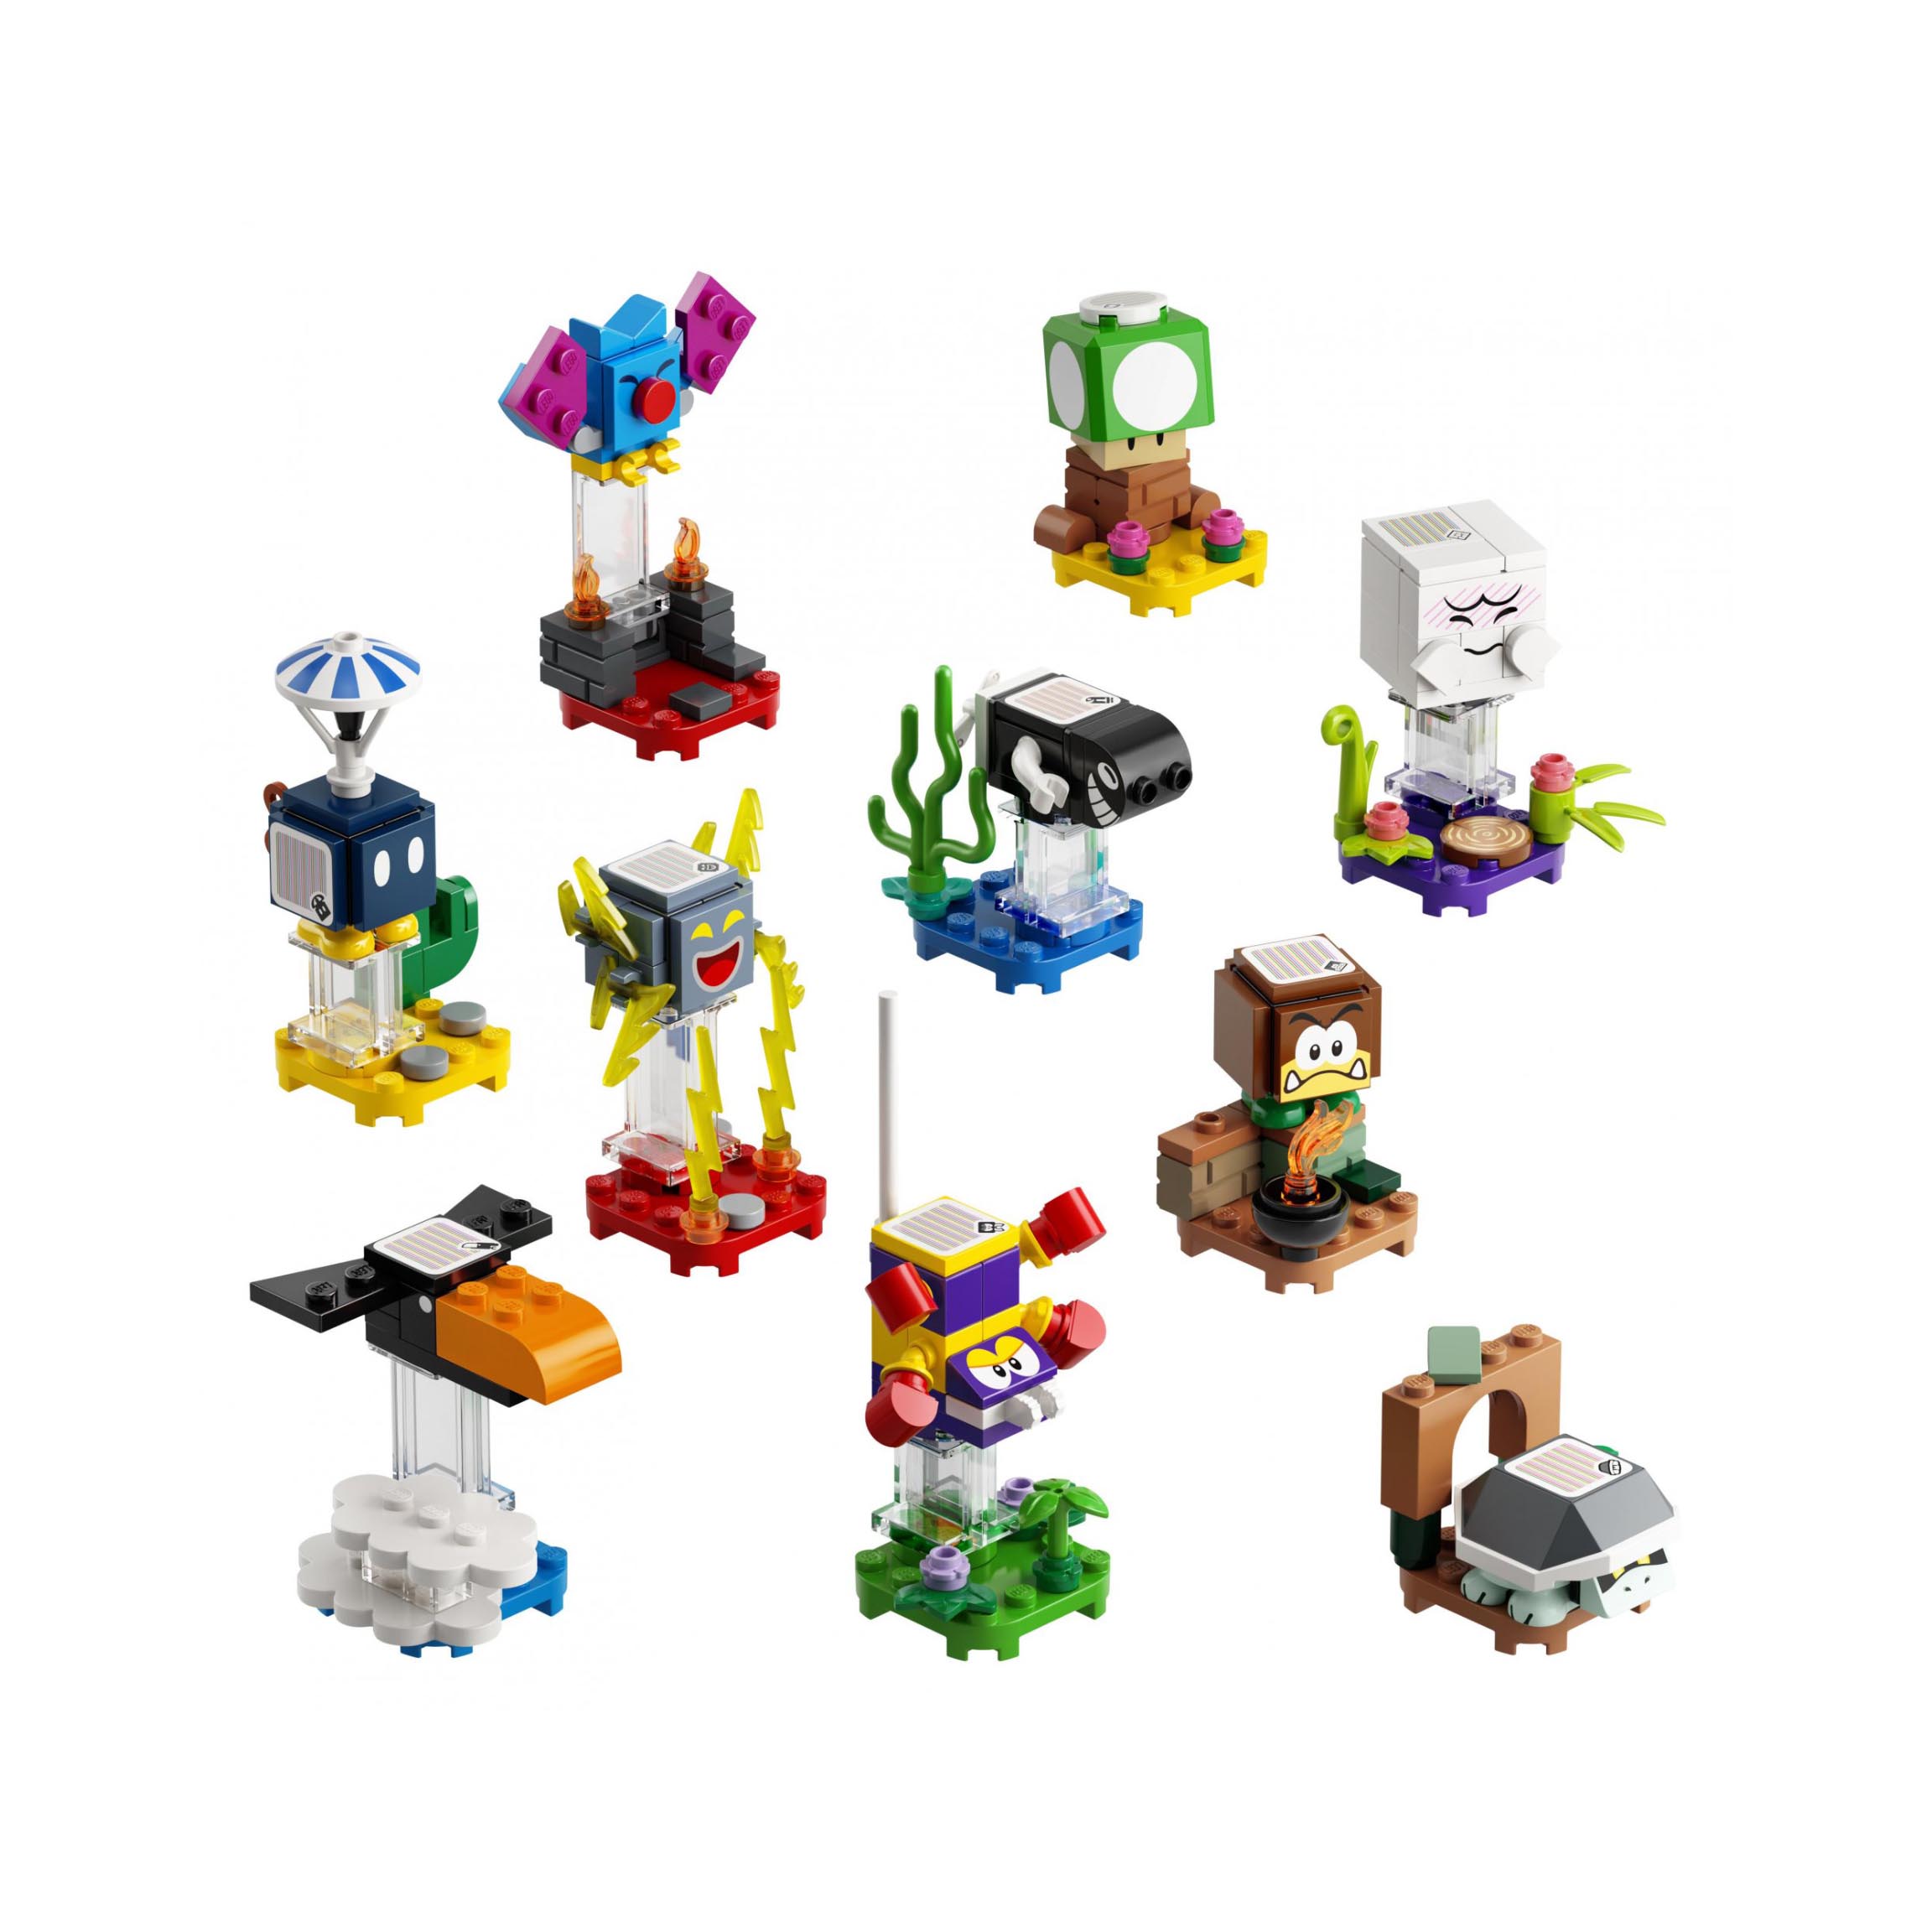 LEGO Pack Personaggi - Serie 3 Personaggi Collezionabili, Mattoncini per Costruz 71394, , large